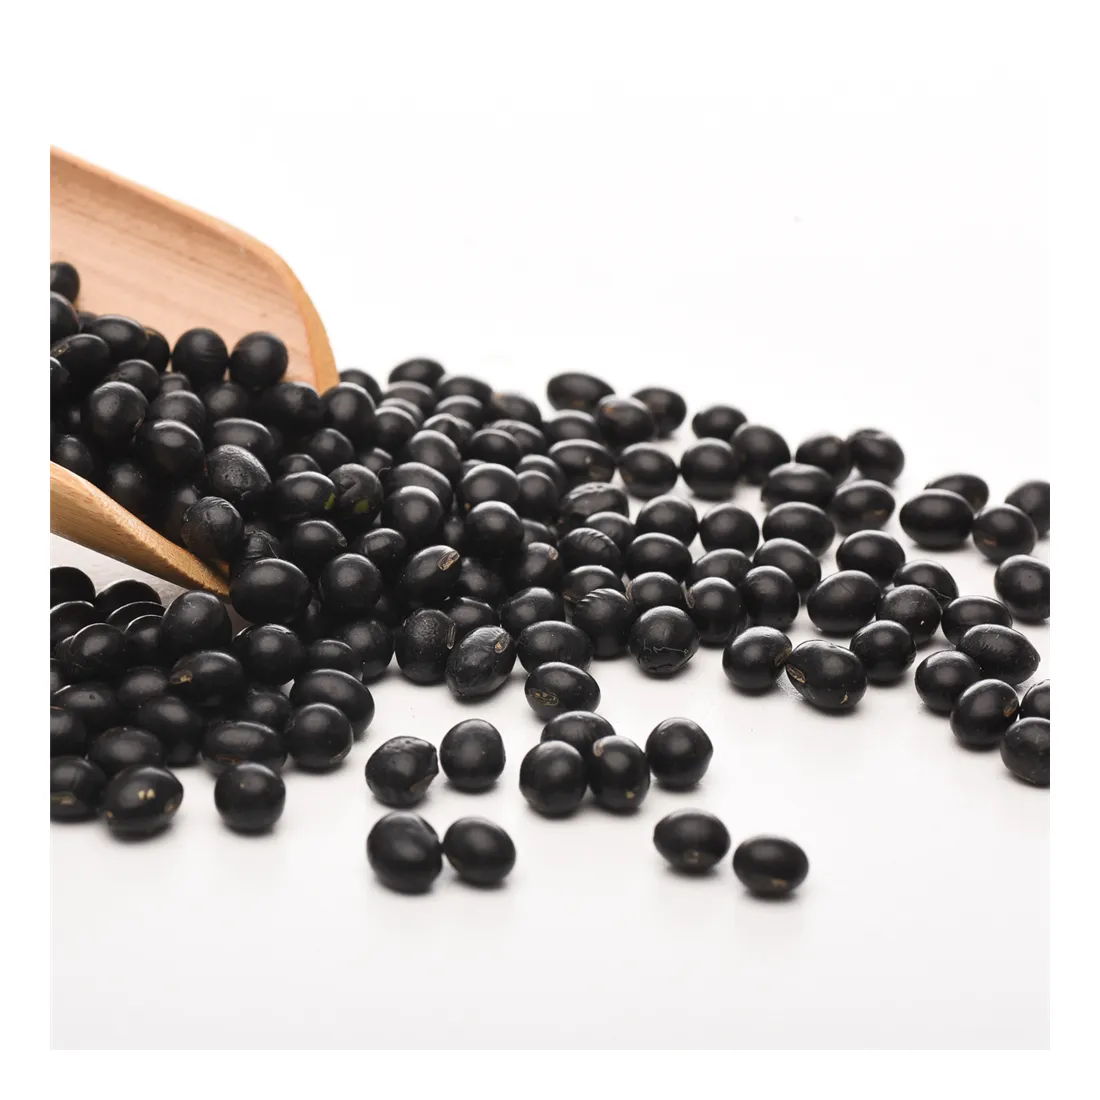 Fagioli neri sani dei grani integrali della soia nera economica di fabbricazione professionale